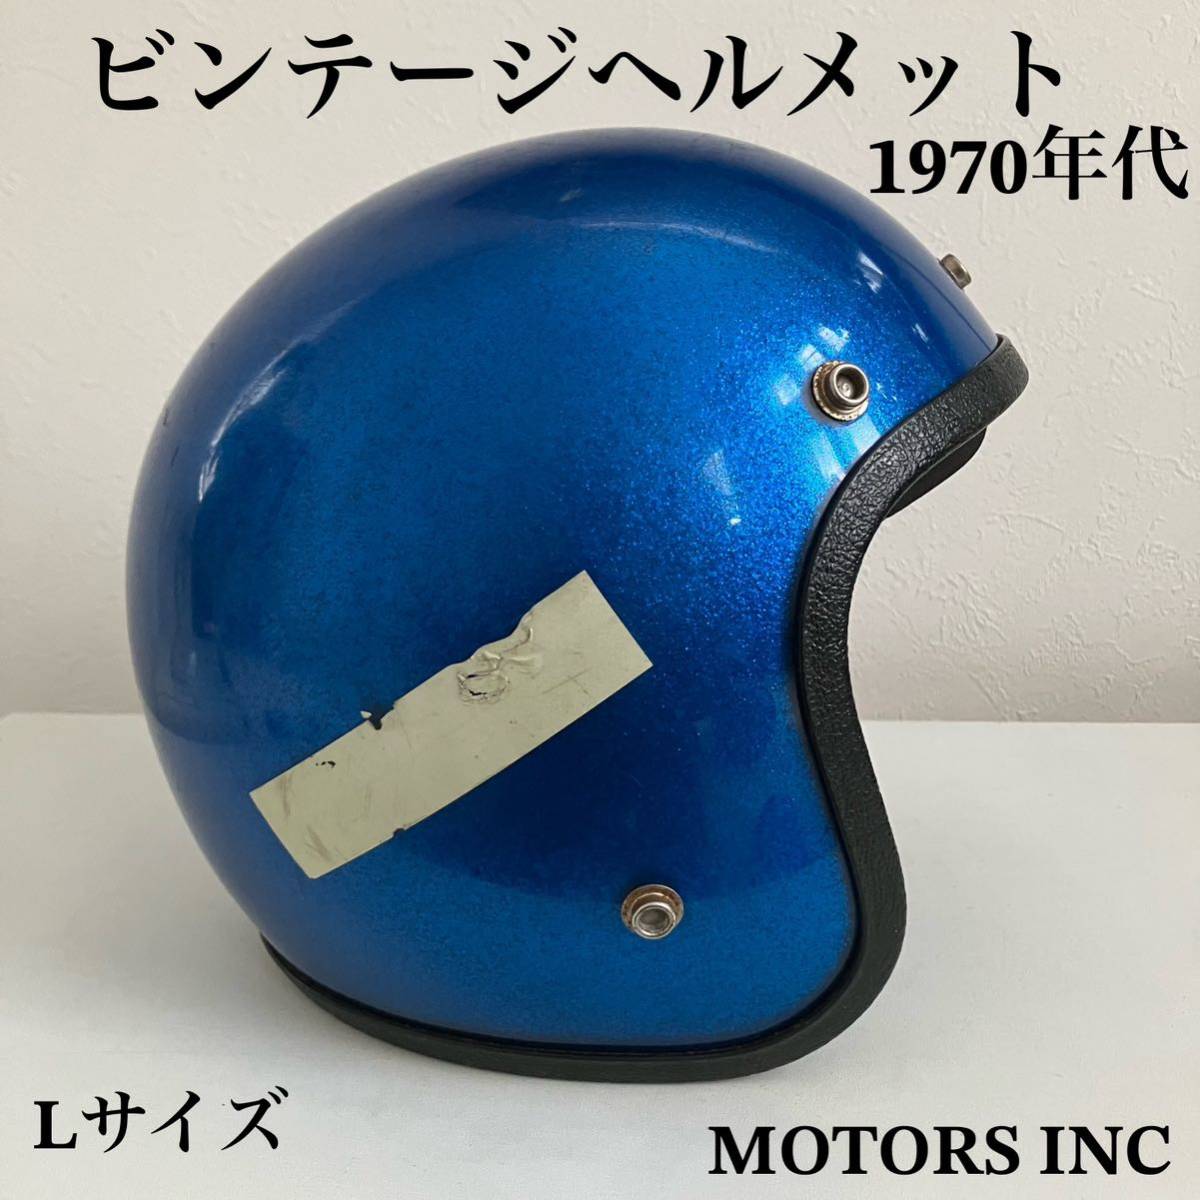 ビンテージヘルメット 1970年代 ヘルメット 青 フレーク ラメ ブルー シールド BELL.ジェット Lサイズ ハーレー北海道 札幌 MOTORS INC